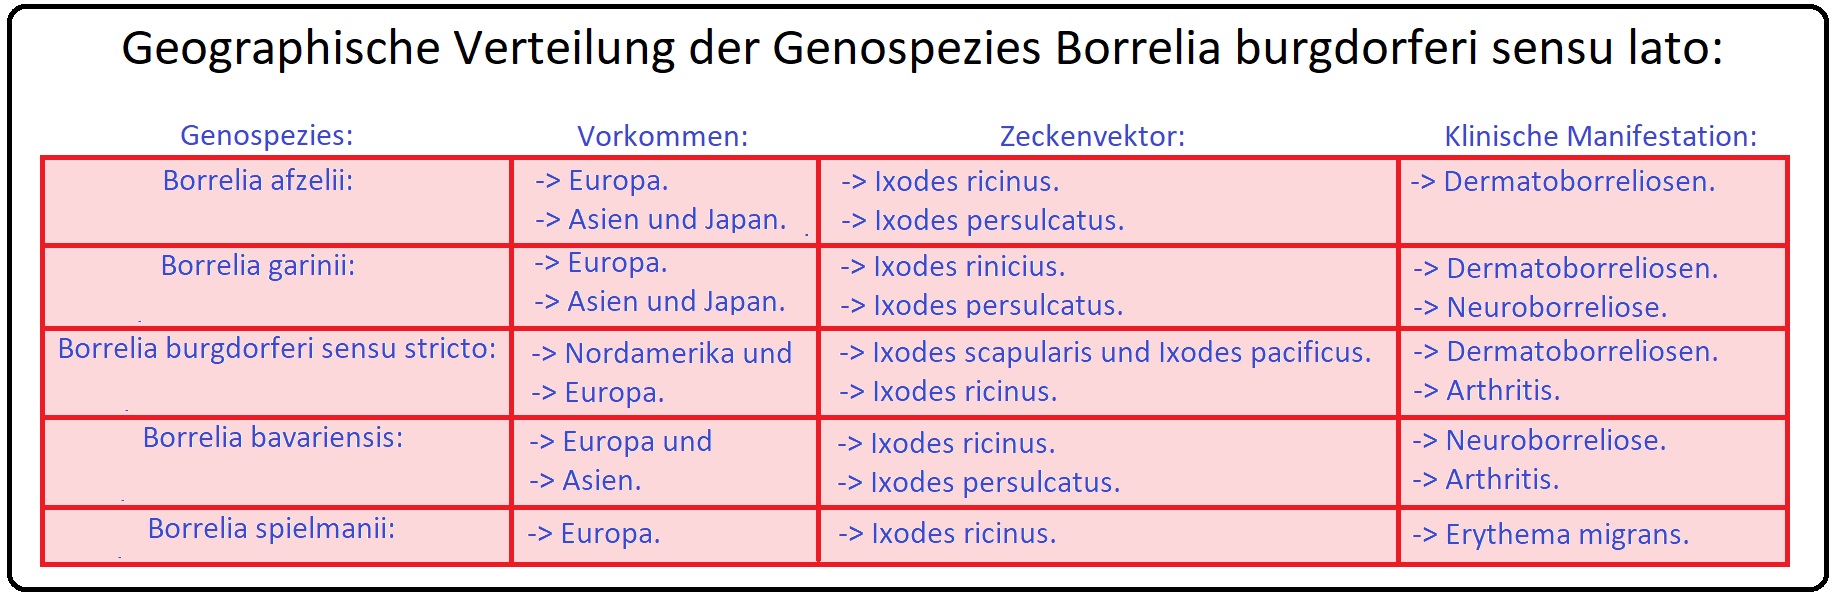 006 Geographische Verteilung der Genospezies der Borrelia burgdorferi sensu lato